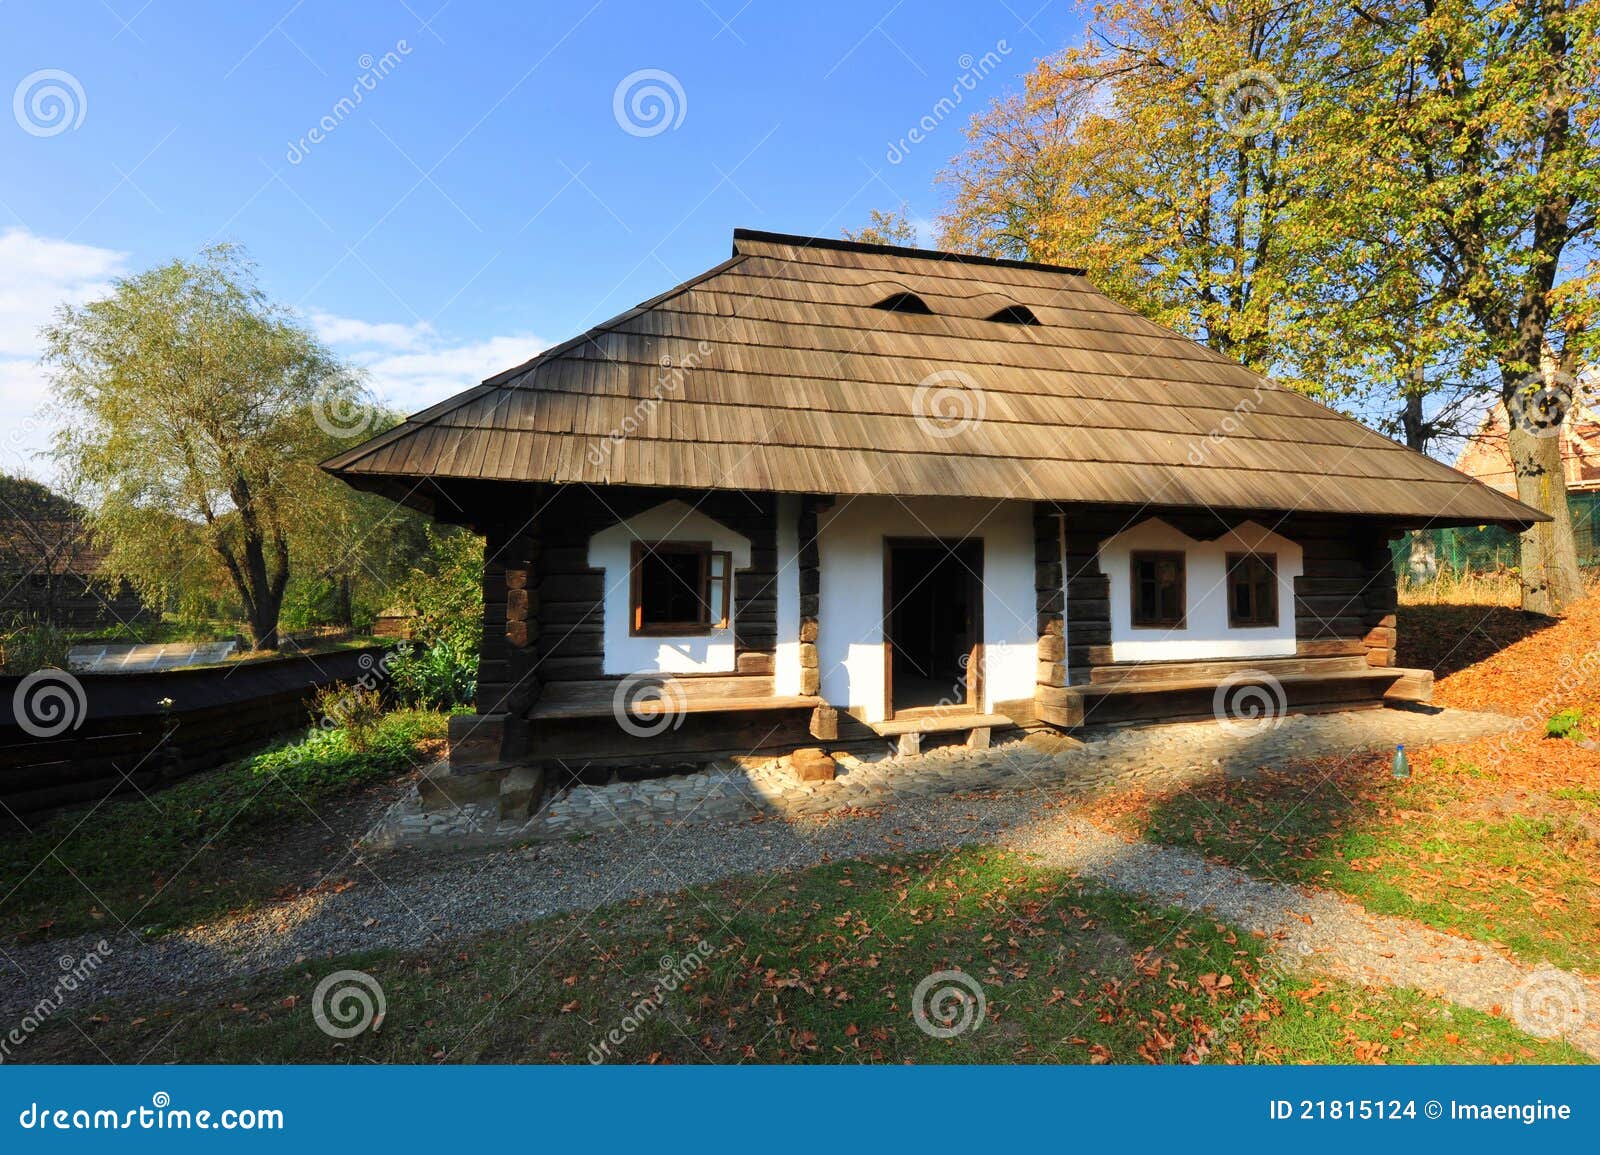 vilalge house from bucovina, romania